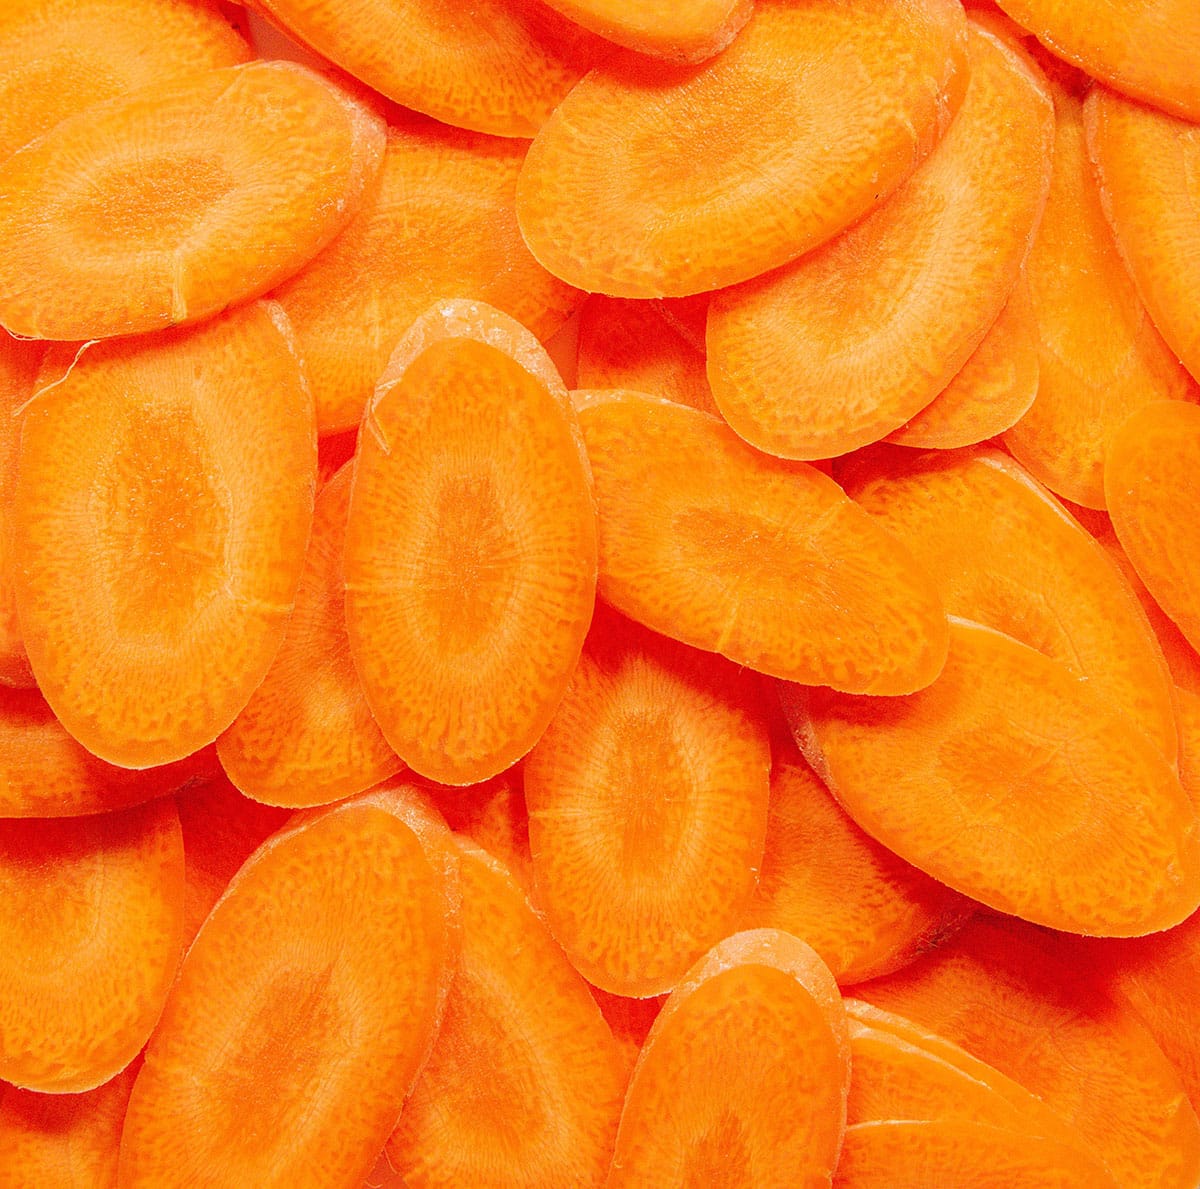 Sliced carrots closeup.